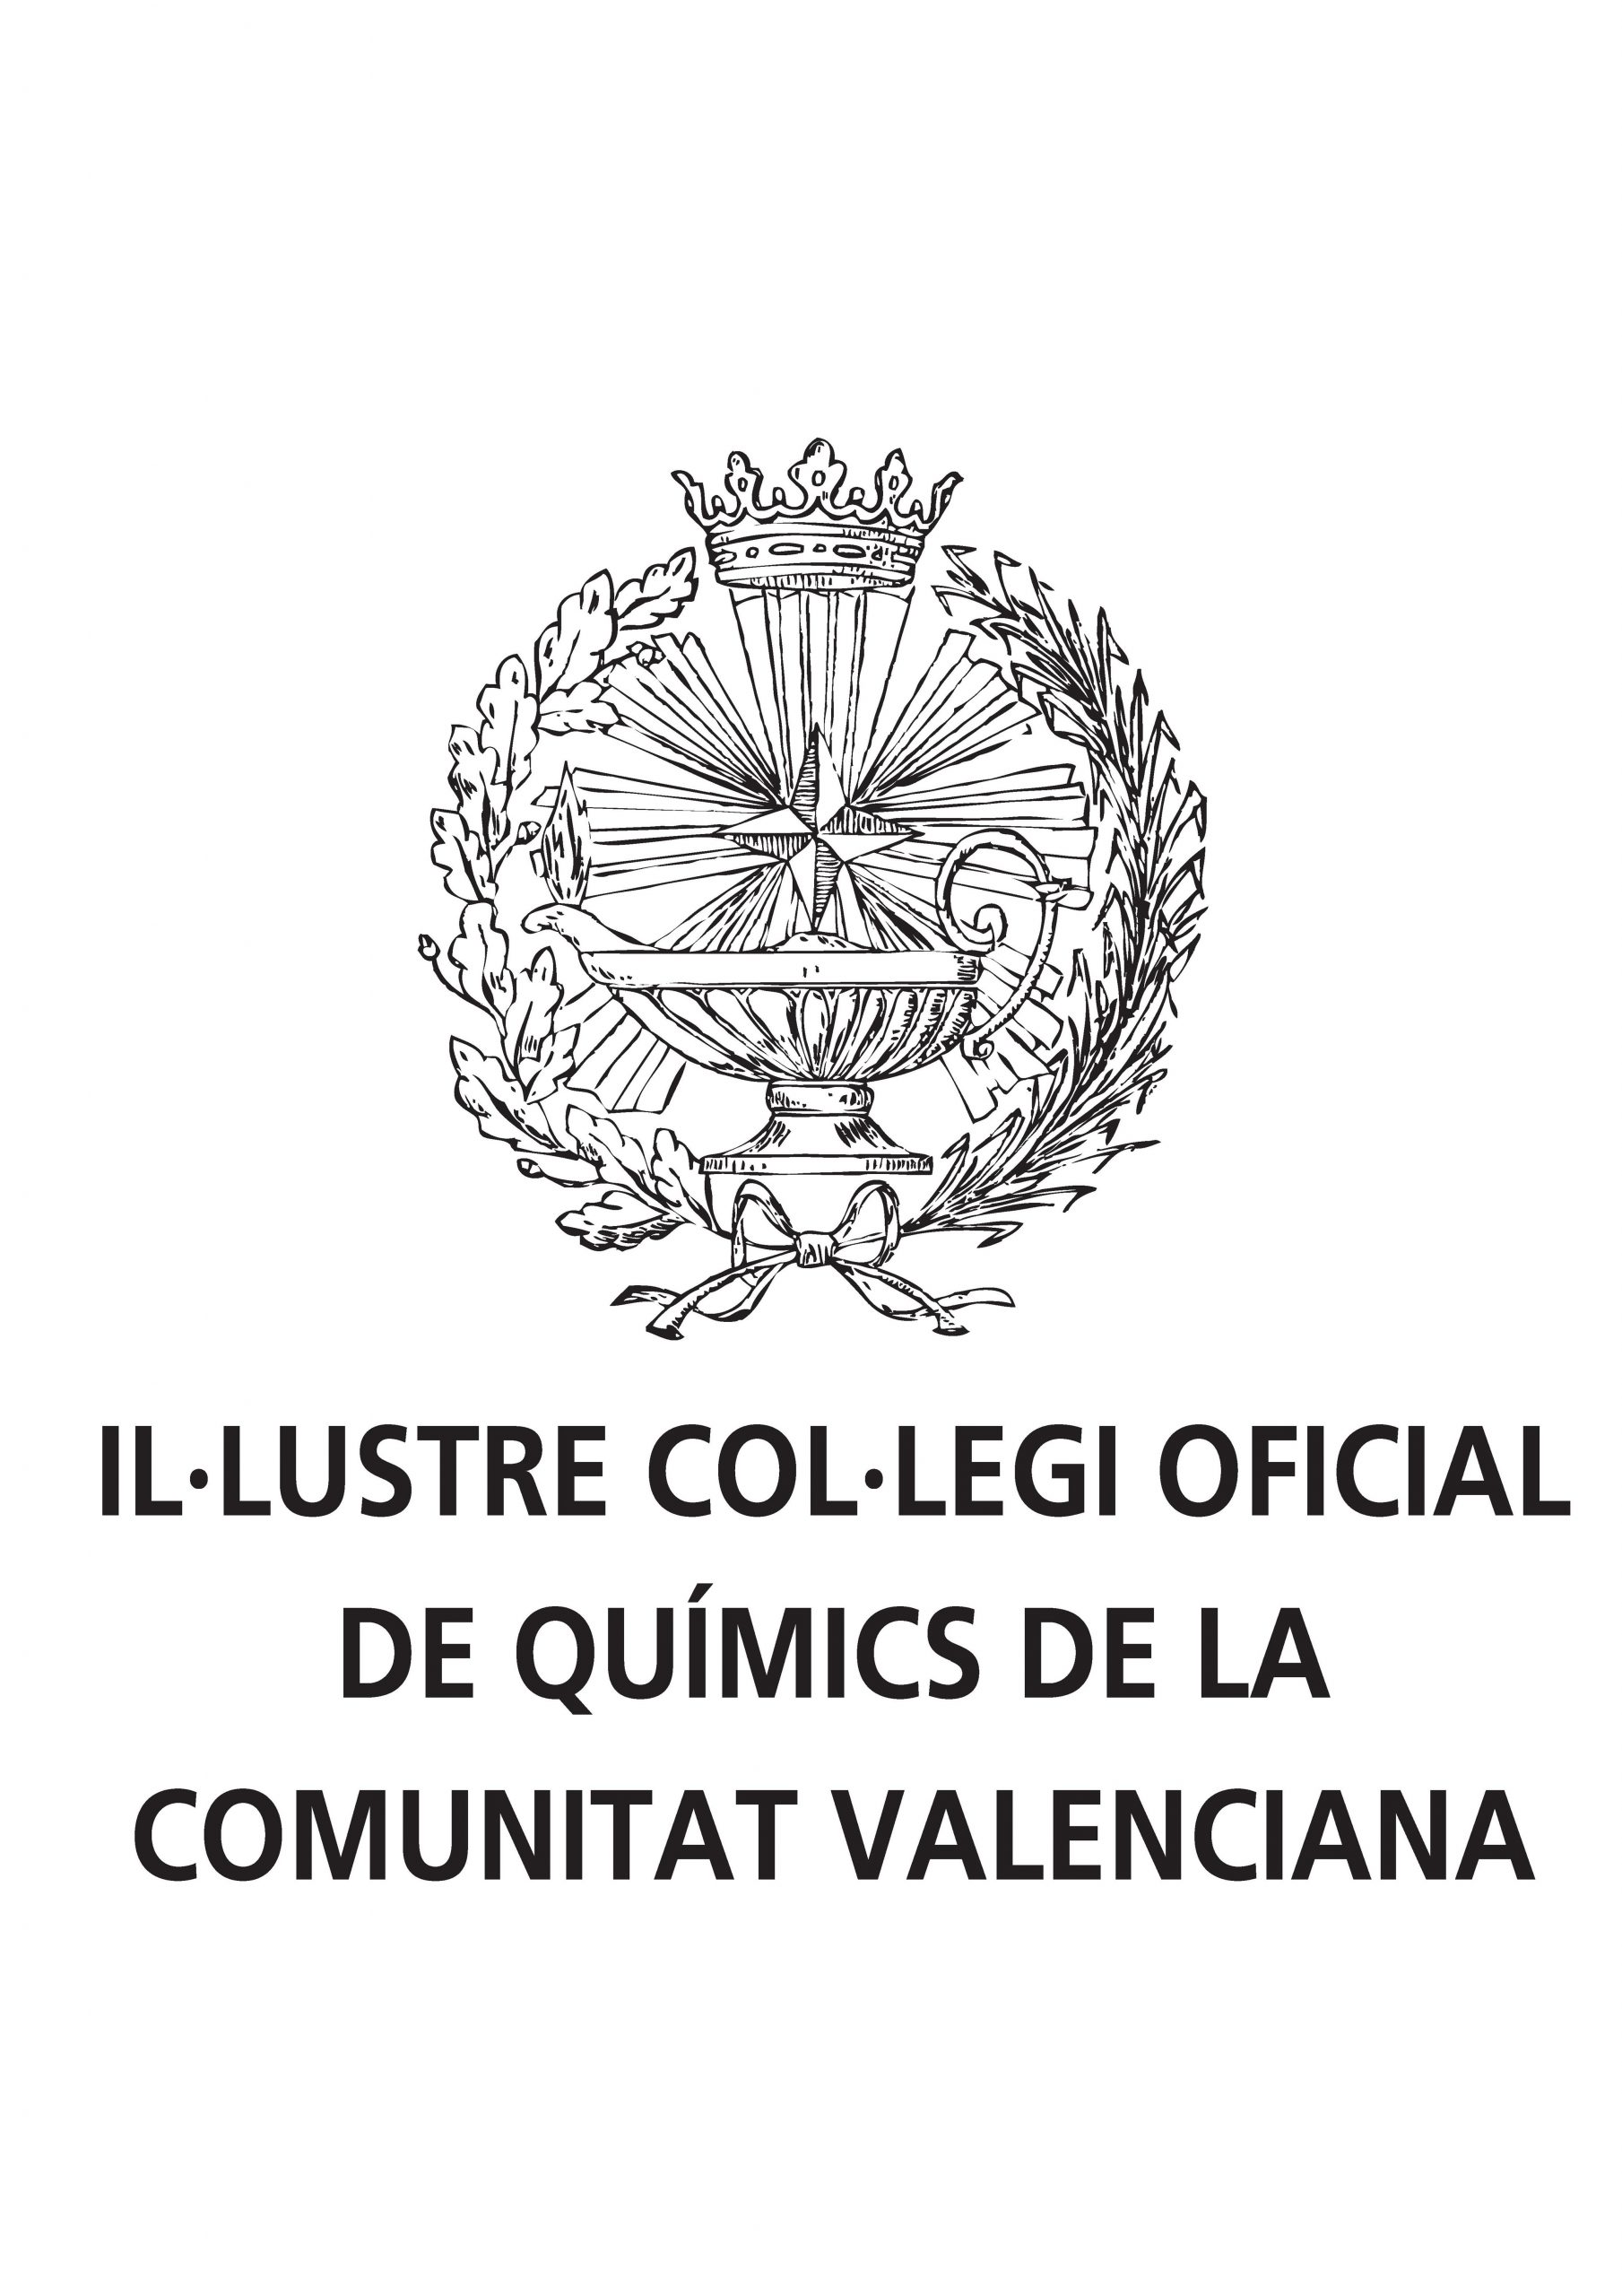 Ilustre Colegio Oficial de Químicos de la Comunidad Valenciana